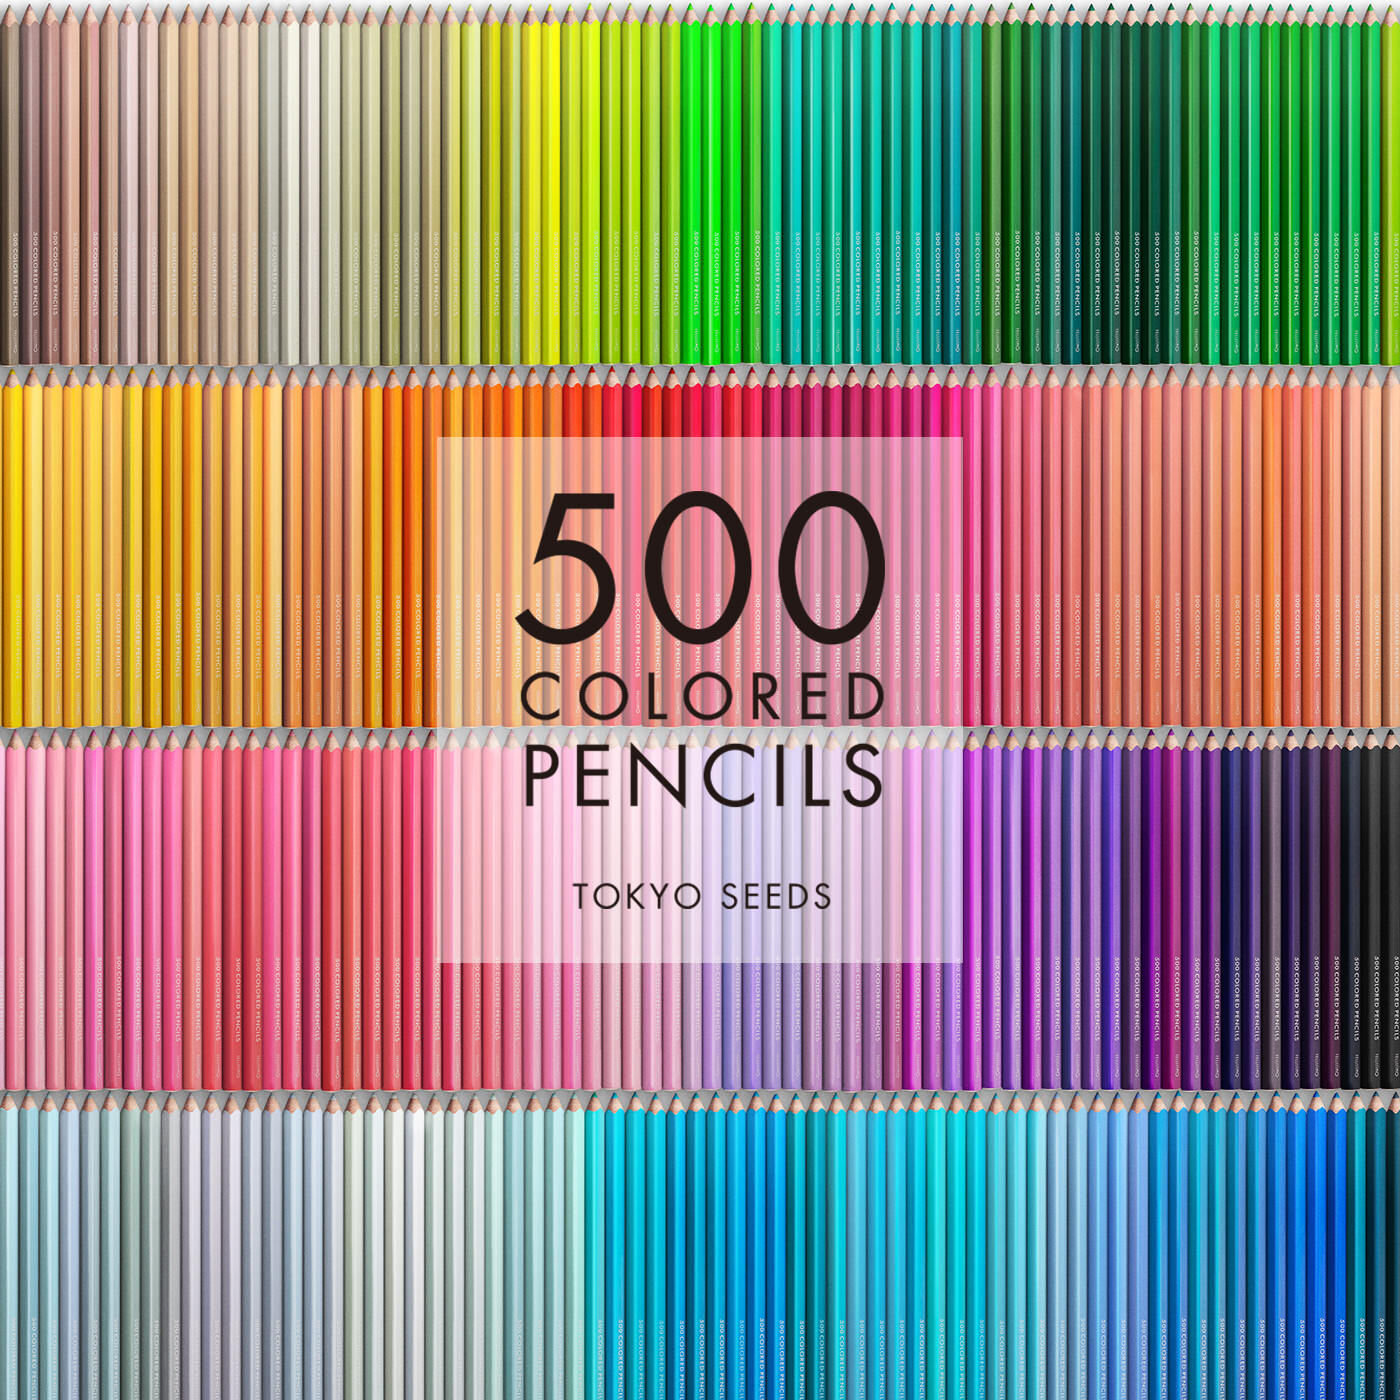 Real Stock|【351/500 EVENING PINETREE】500色の色えんぴつ TOKYO SEEDS|1992年、世界初の「500色」という膨大な色数の色えんぴつが誕生して以来、その販売数は発売当初から合わせると、世界55ヵ国10万セット以上。今回、メイド・イン・ジャパンにこだわり、すべてが新しく生まれ変わって登場しました。